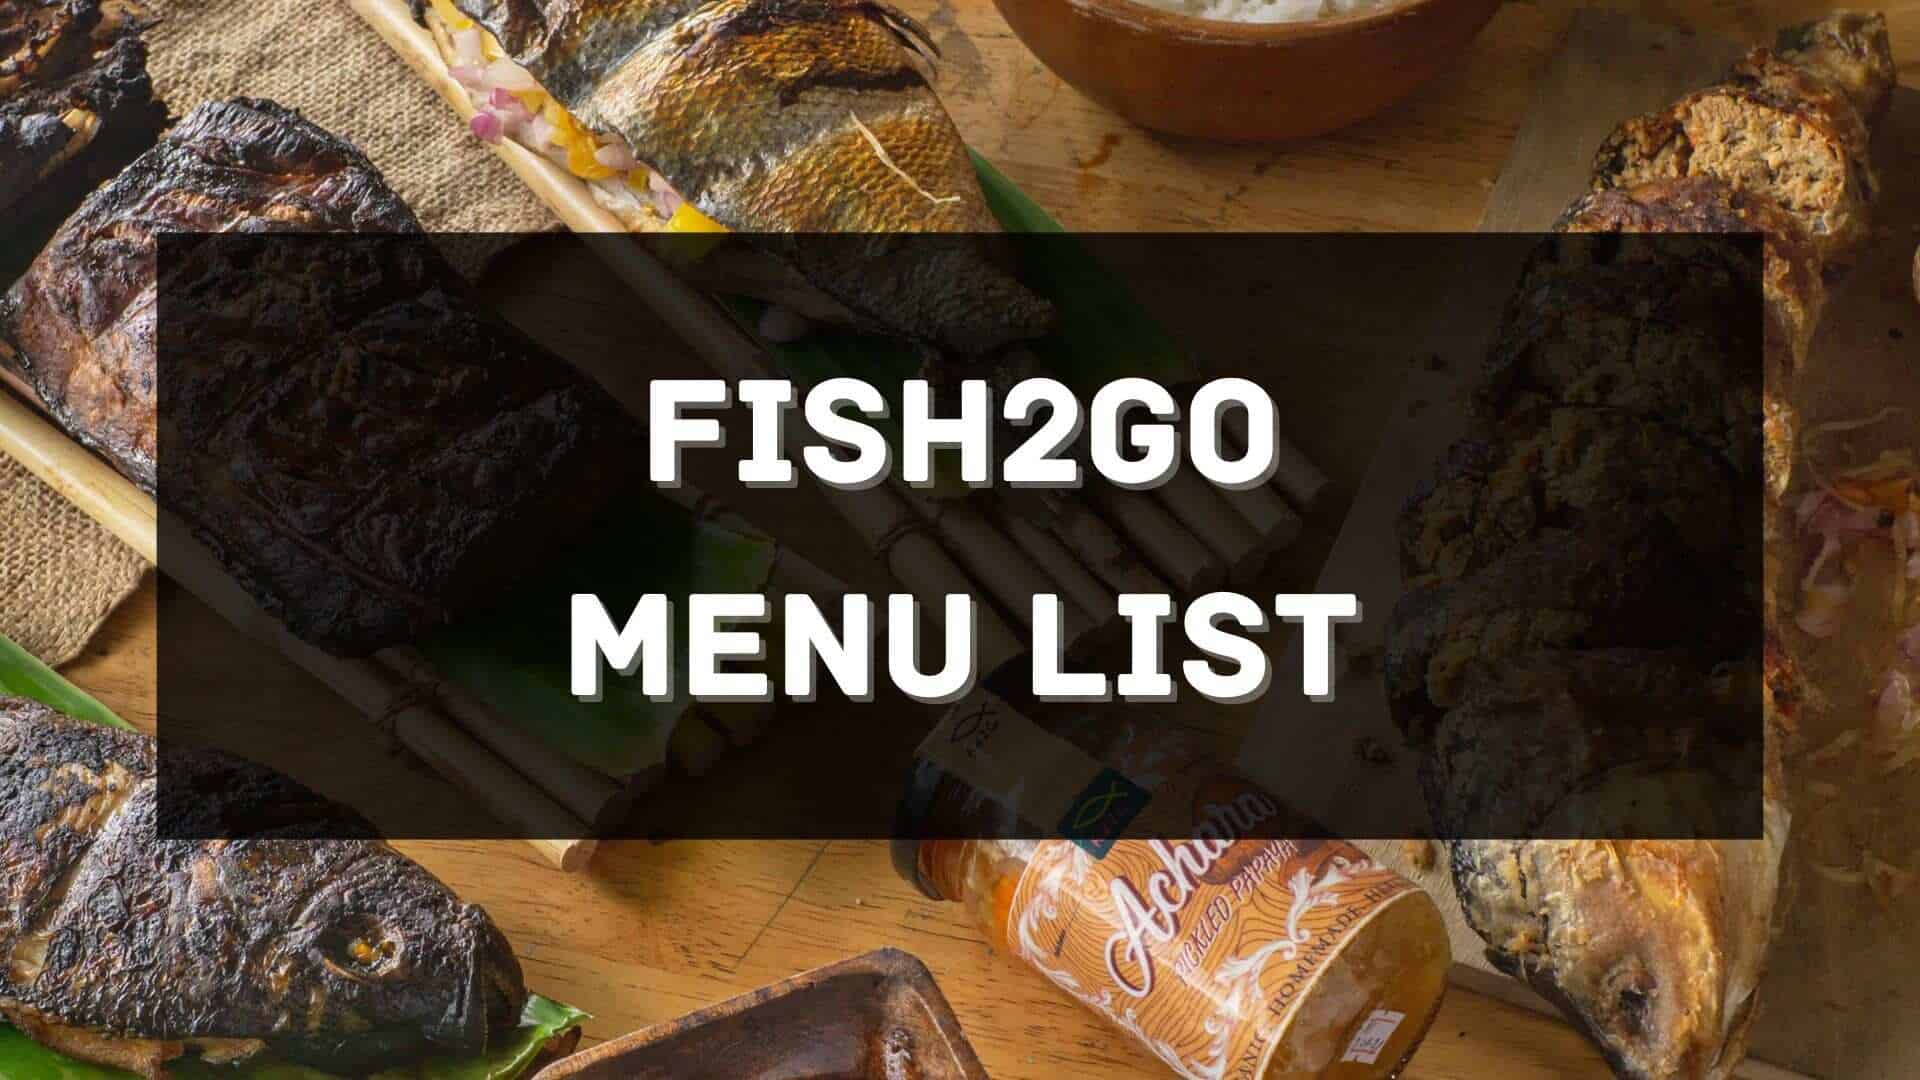 fish2go menu prices philippines